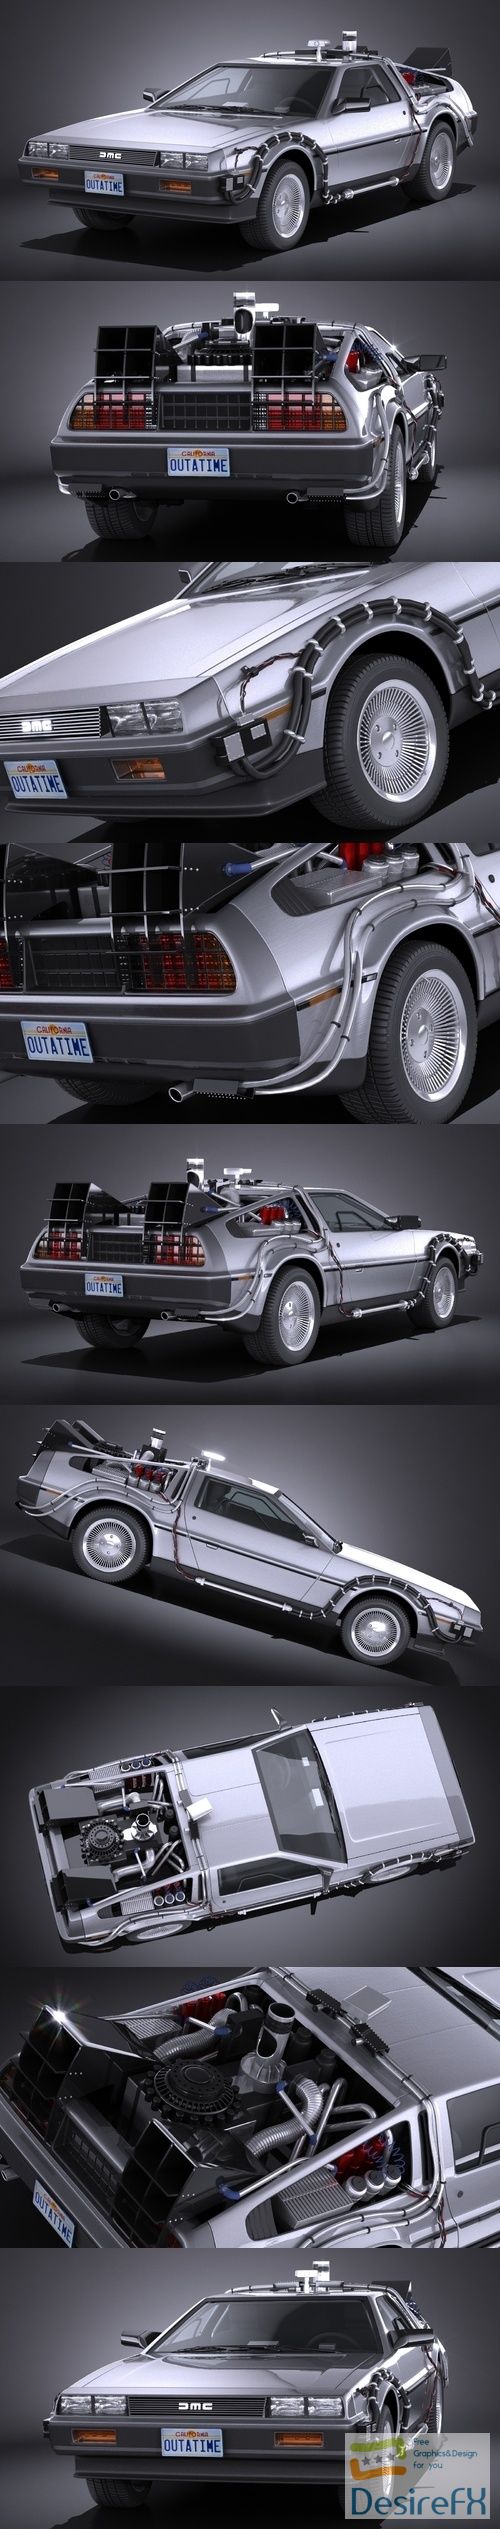 DeLorean DMC-12 Back To The Future episode 1 3D Model